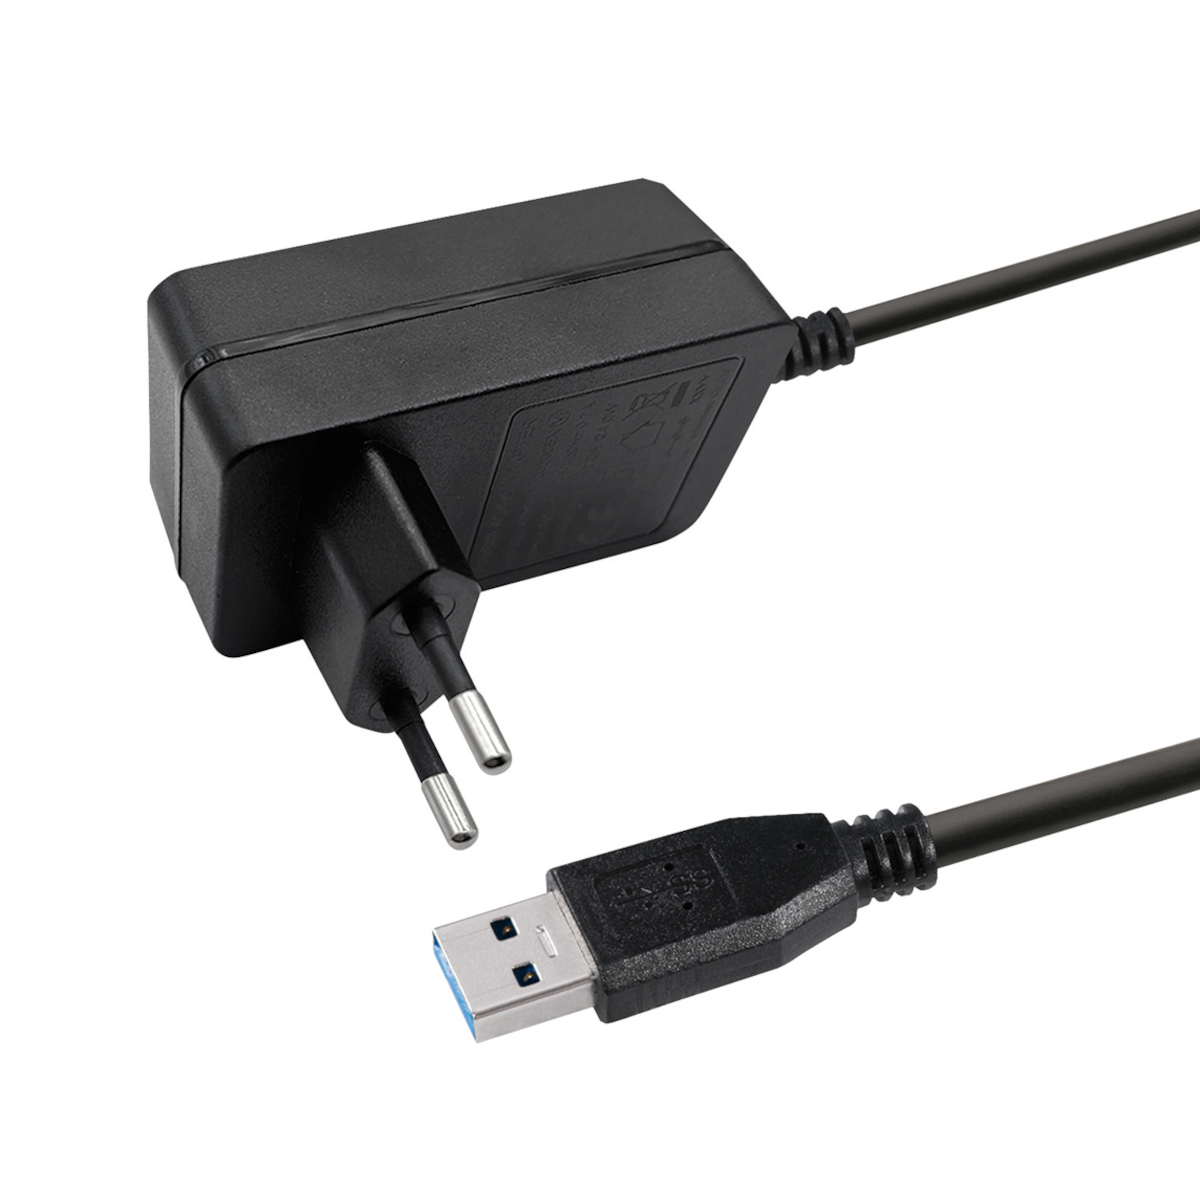 MAXTRACK 8 aluminiumfarben Port, USB Hub, CH11L